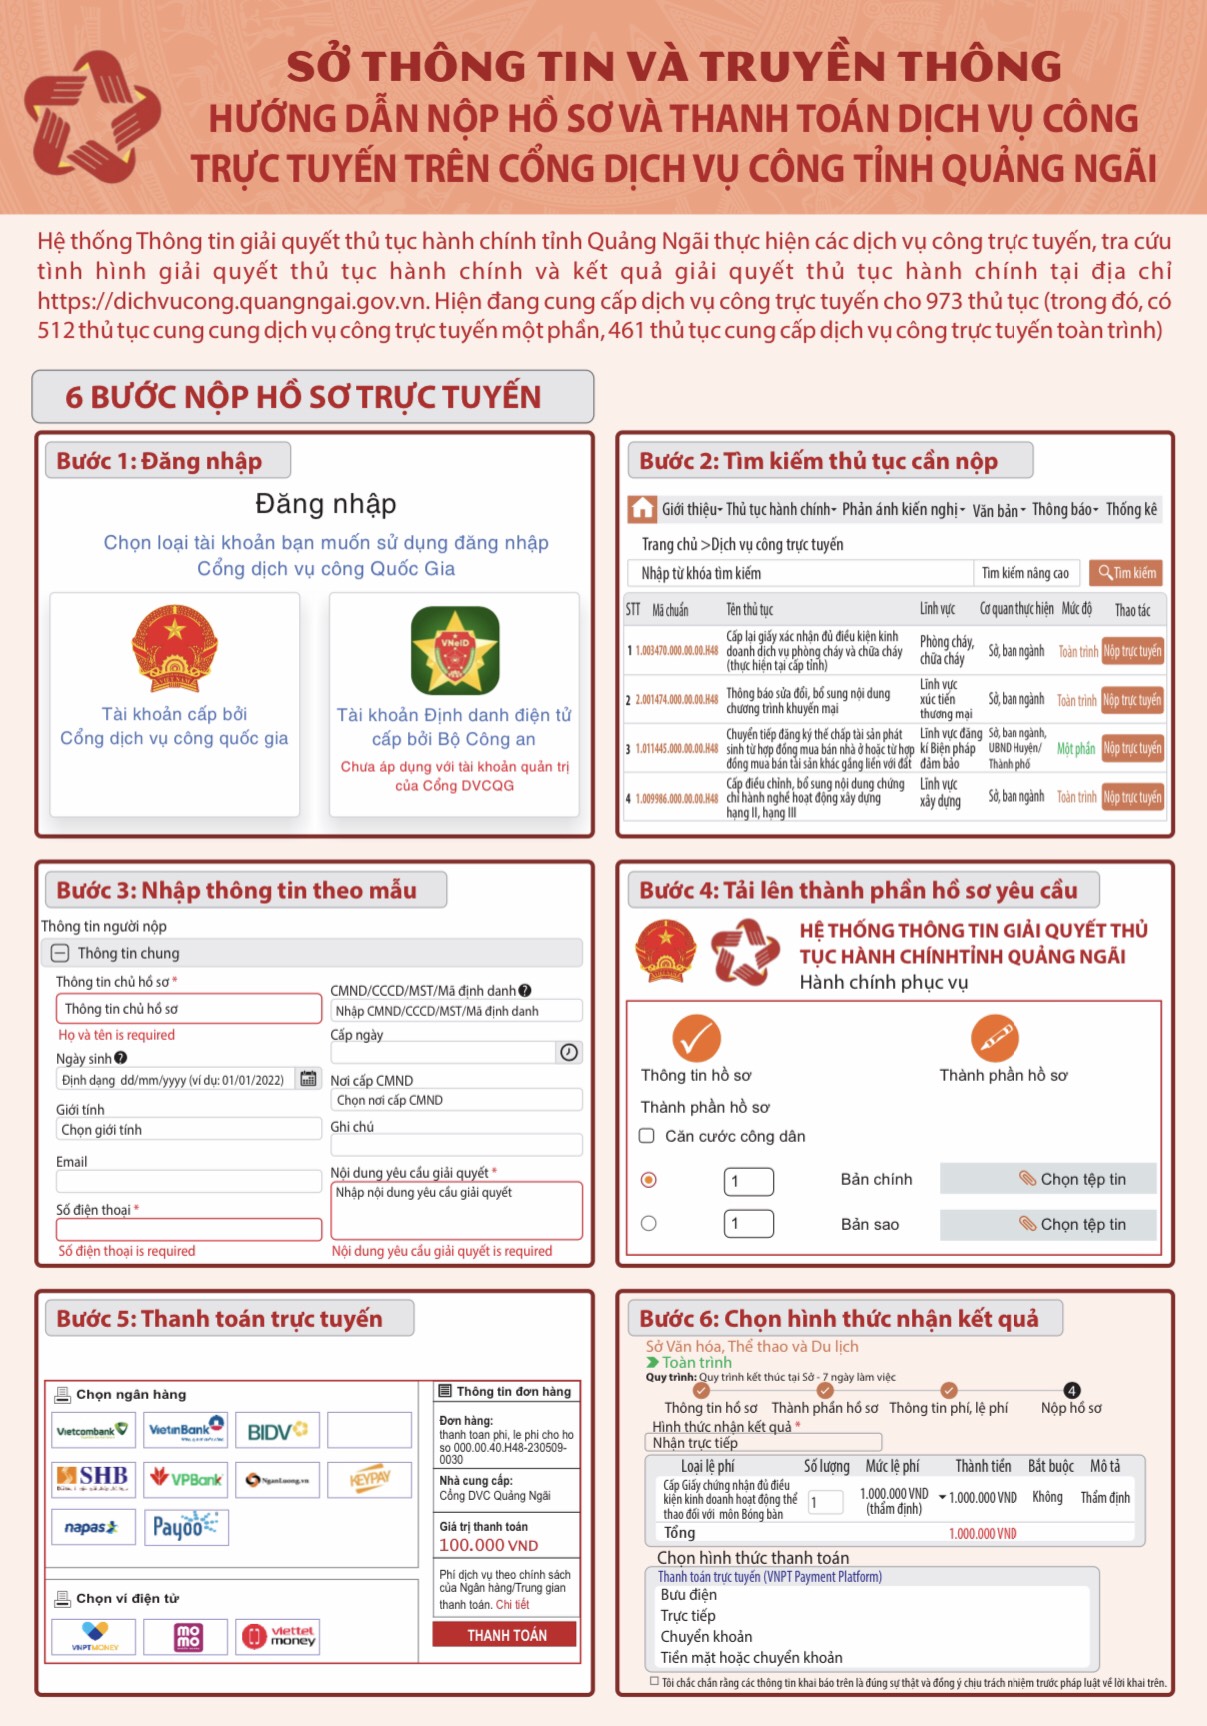 Hướng dẫn quy trình nộp hồ sơ và thanh toán dịch vụ công trực tuyến trên Cổng dịch vụ công tỉnh Quảng Ngãi